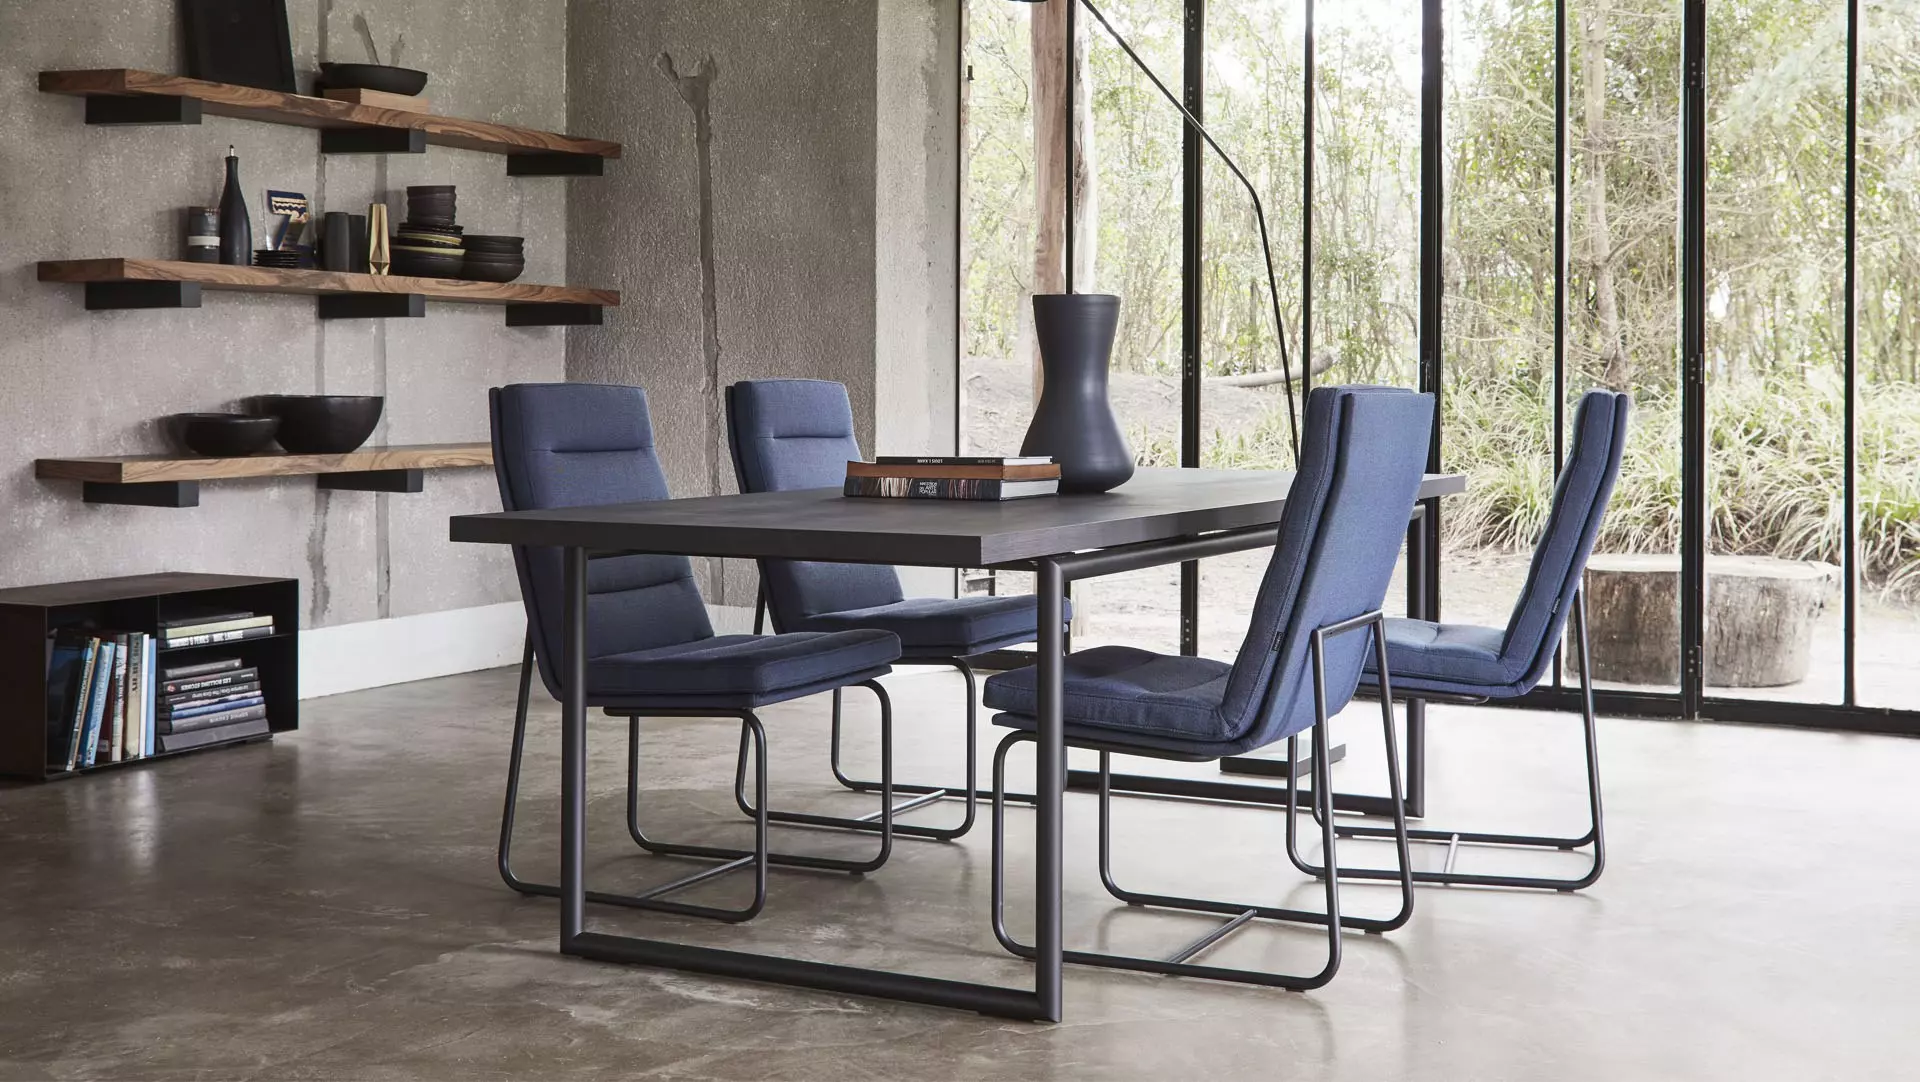 Gelderland 7854 esza 7851t 72 tafel eetkamerstoelen stoelen eetkamertafel design vanderlindeinterieur